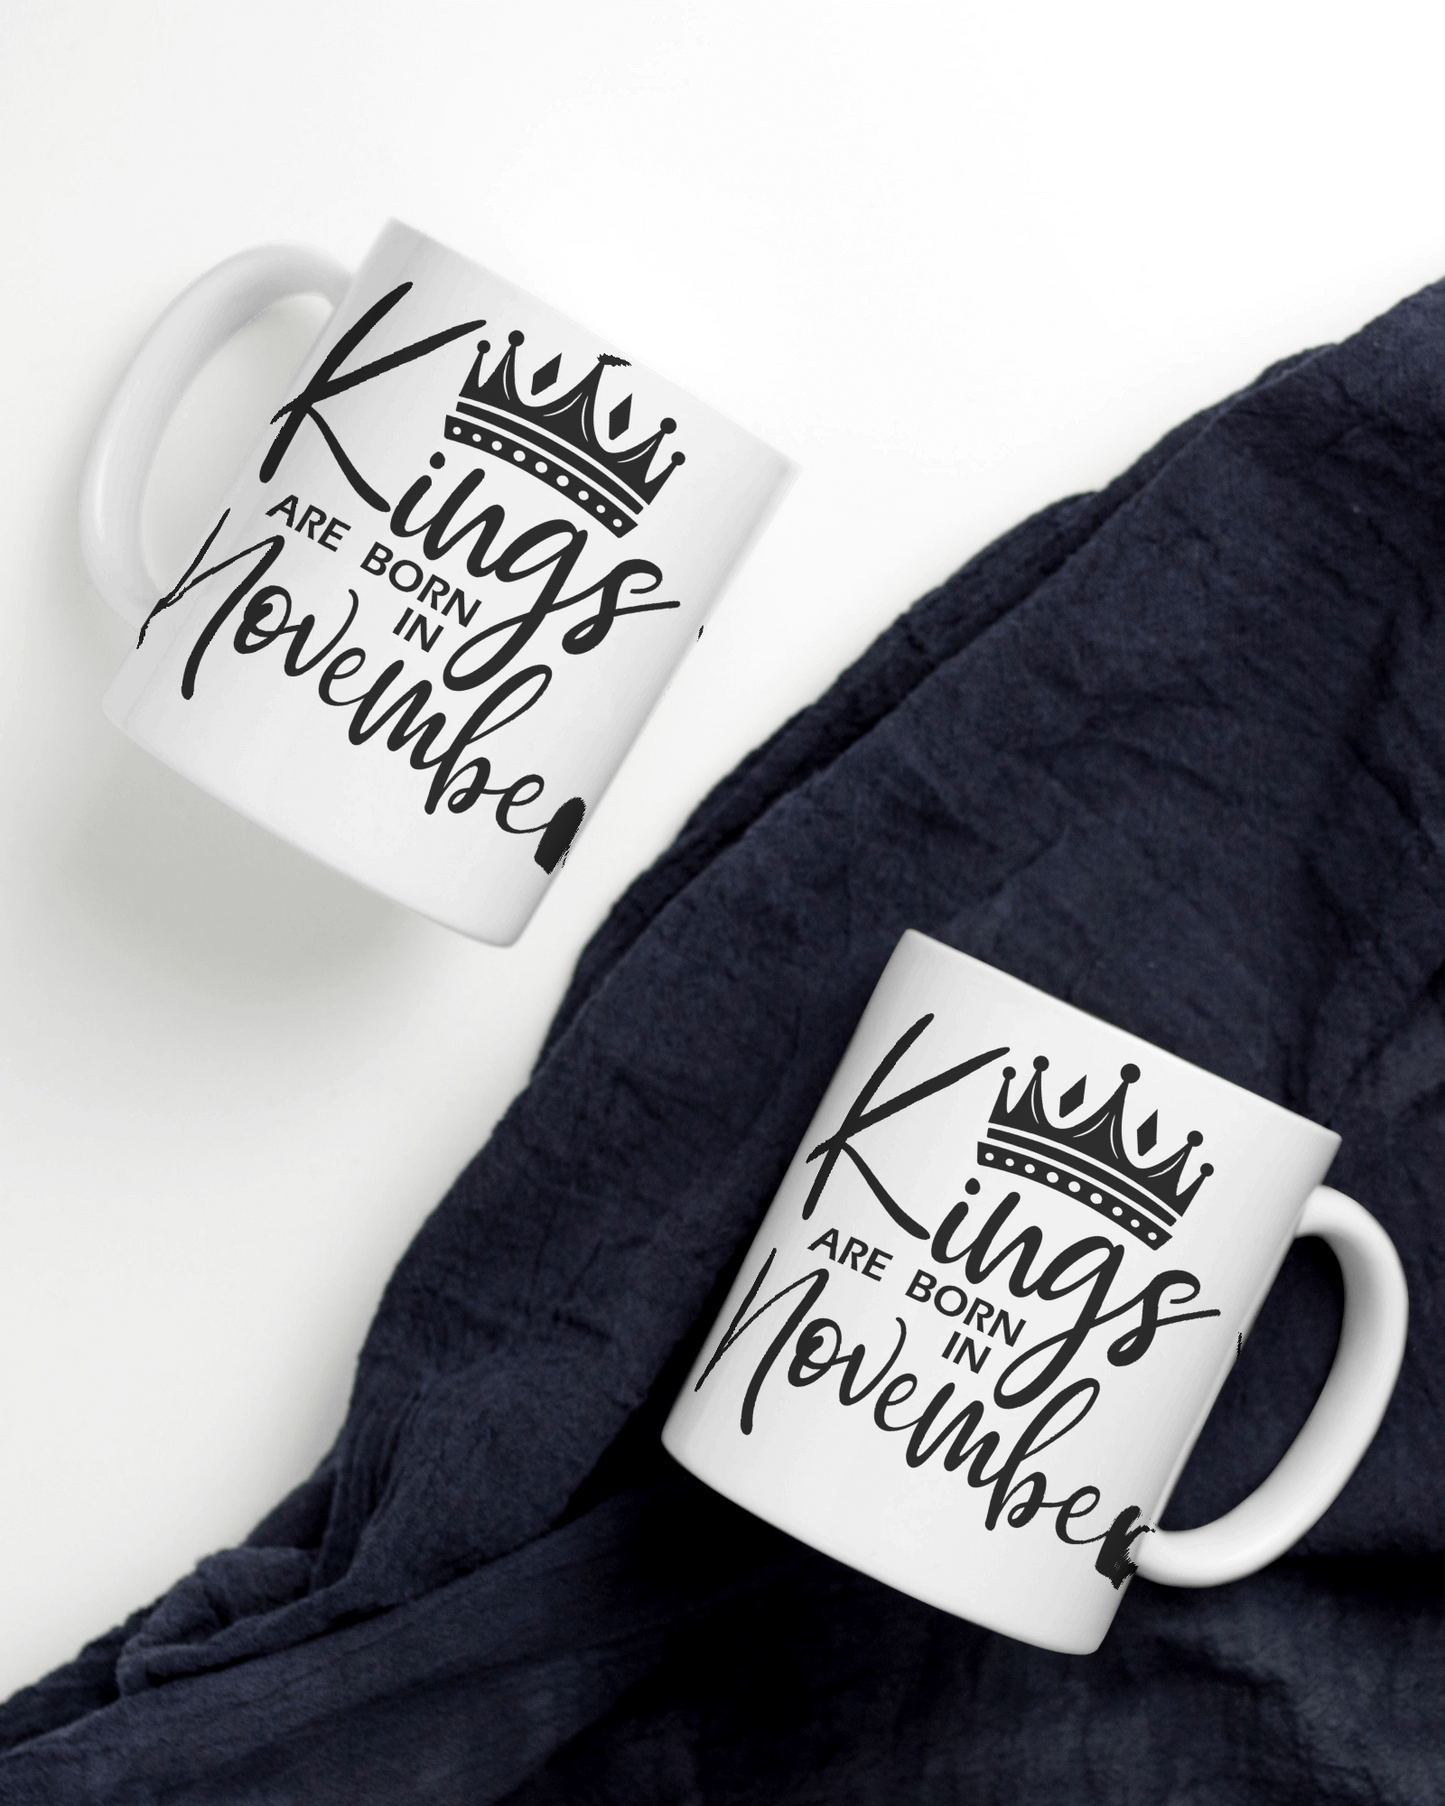 Kings Are Born in November Mug